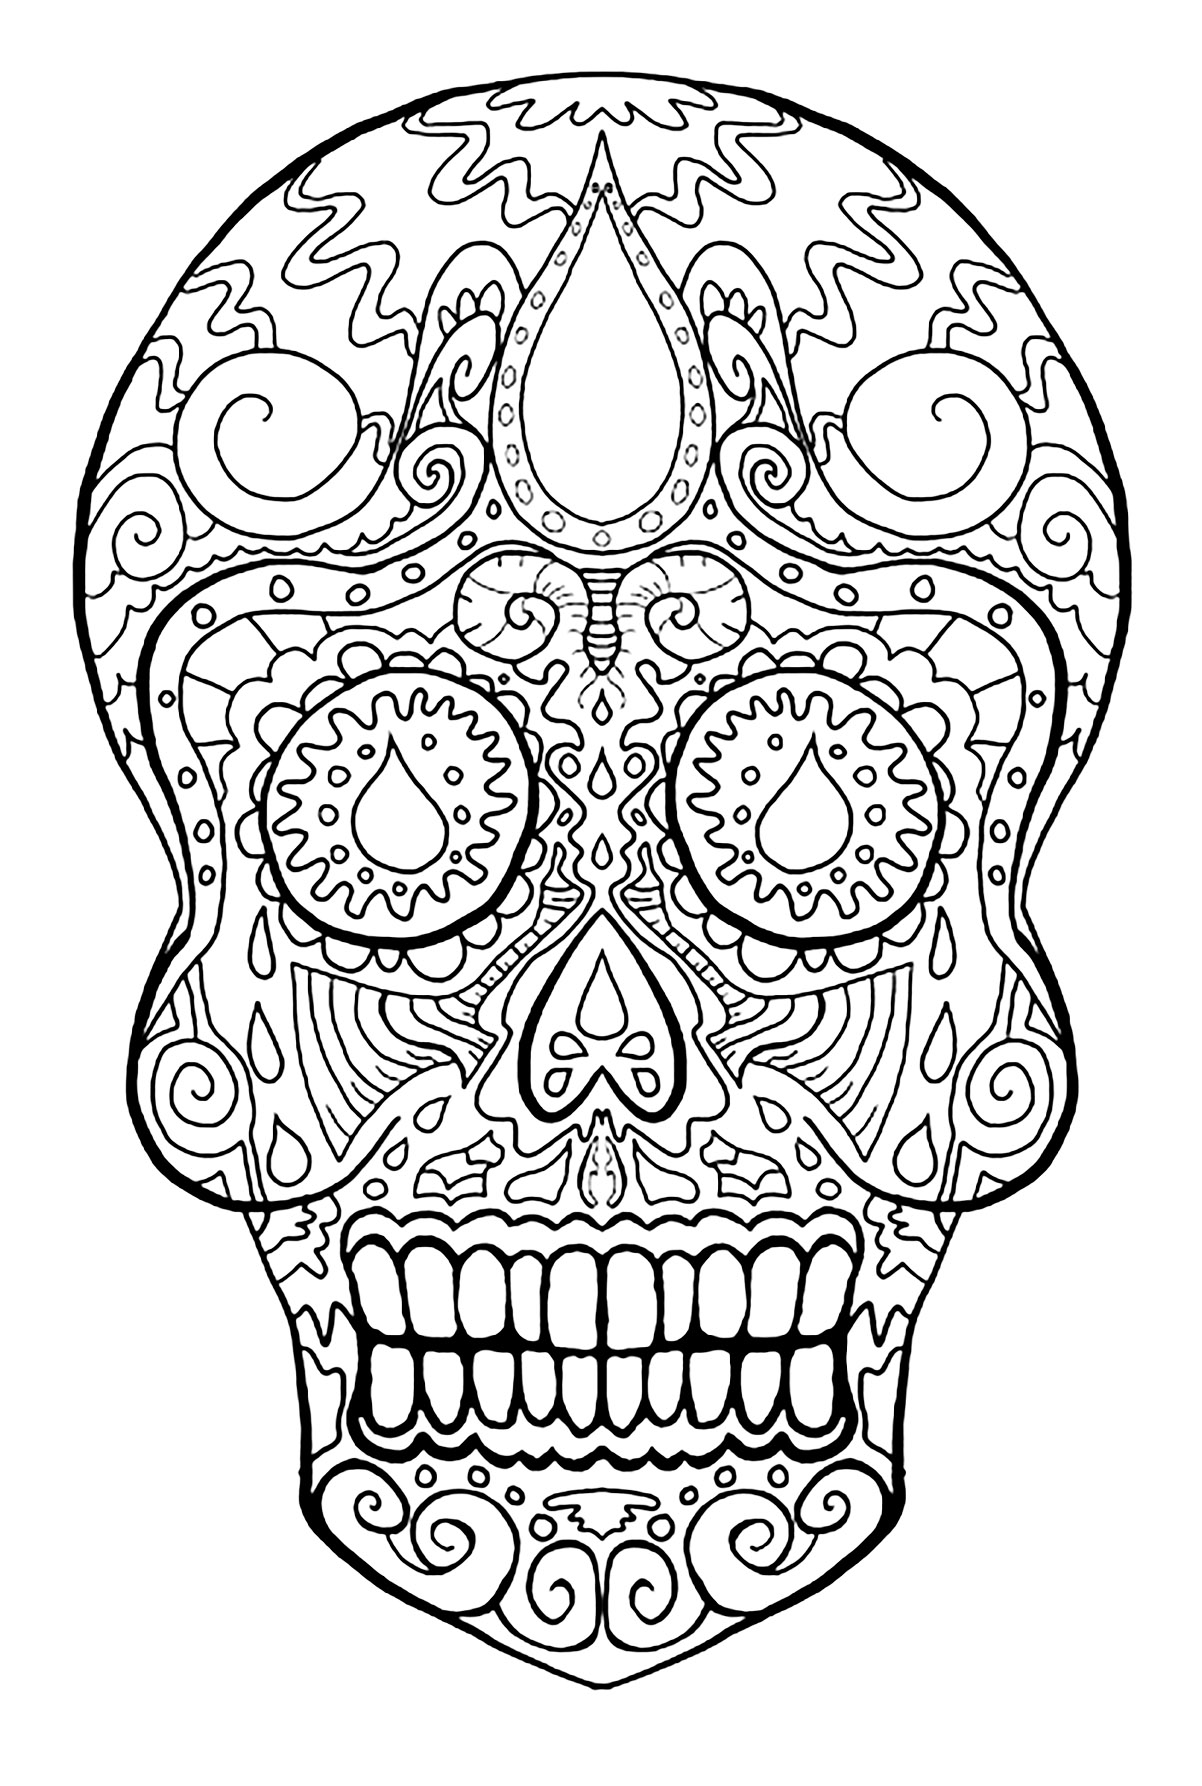 Calavera representativa de la festividad mexicana 'Día de los Muertos. Esta página para colorear está inspirada en el festival mexicano Días de los Muertos. Representa una calavera, símbolo esencial de esta celebración.
Se compone de motivos que reflejan la alegría y el júbilo de esta festividad